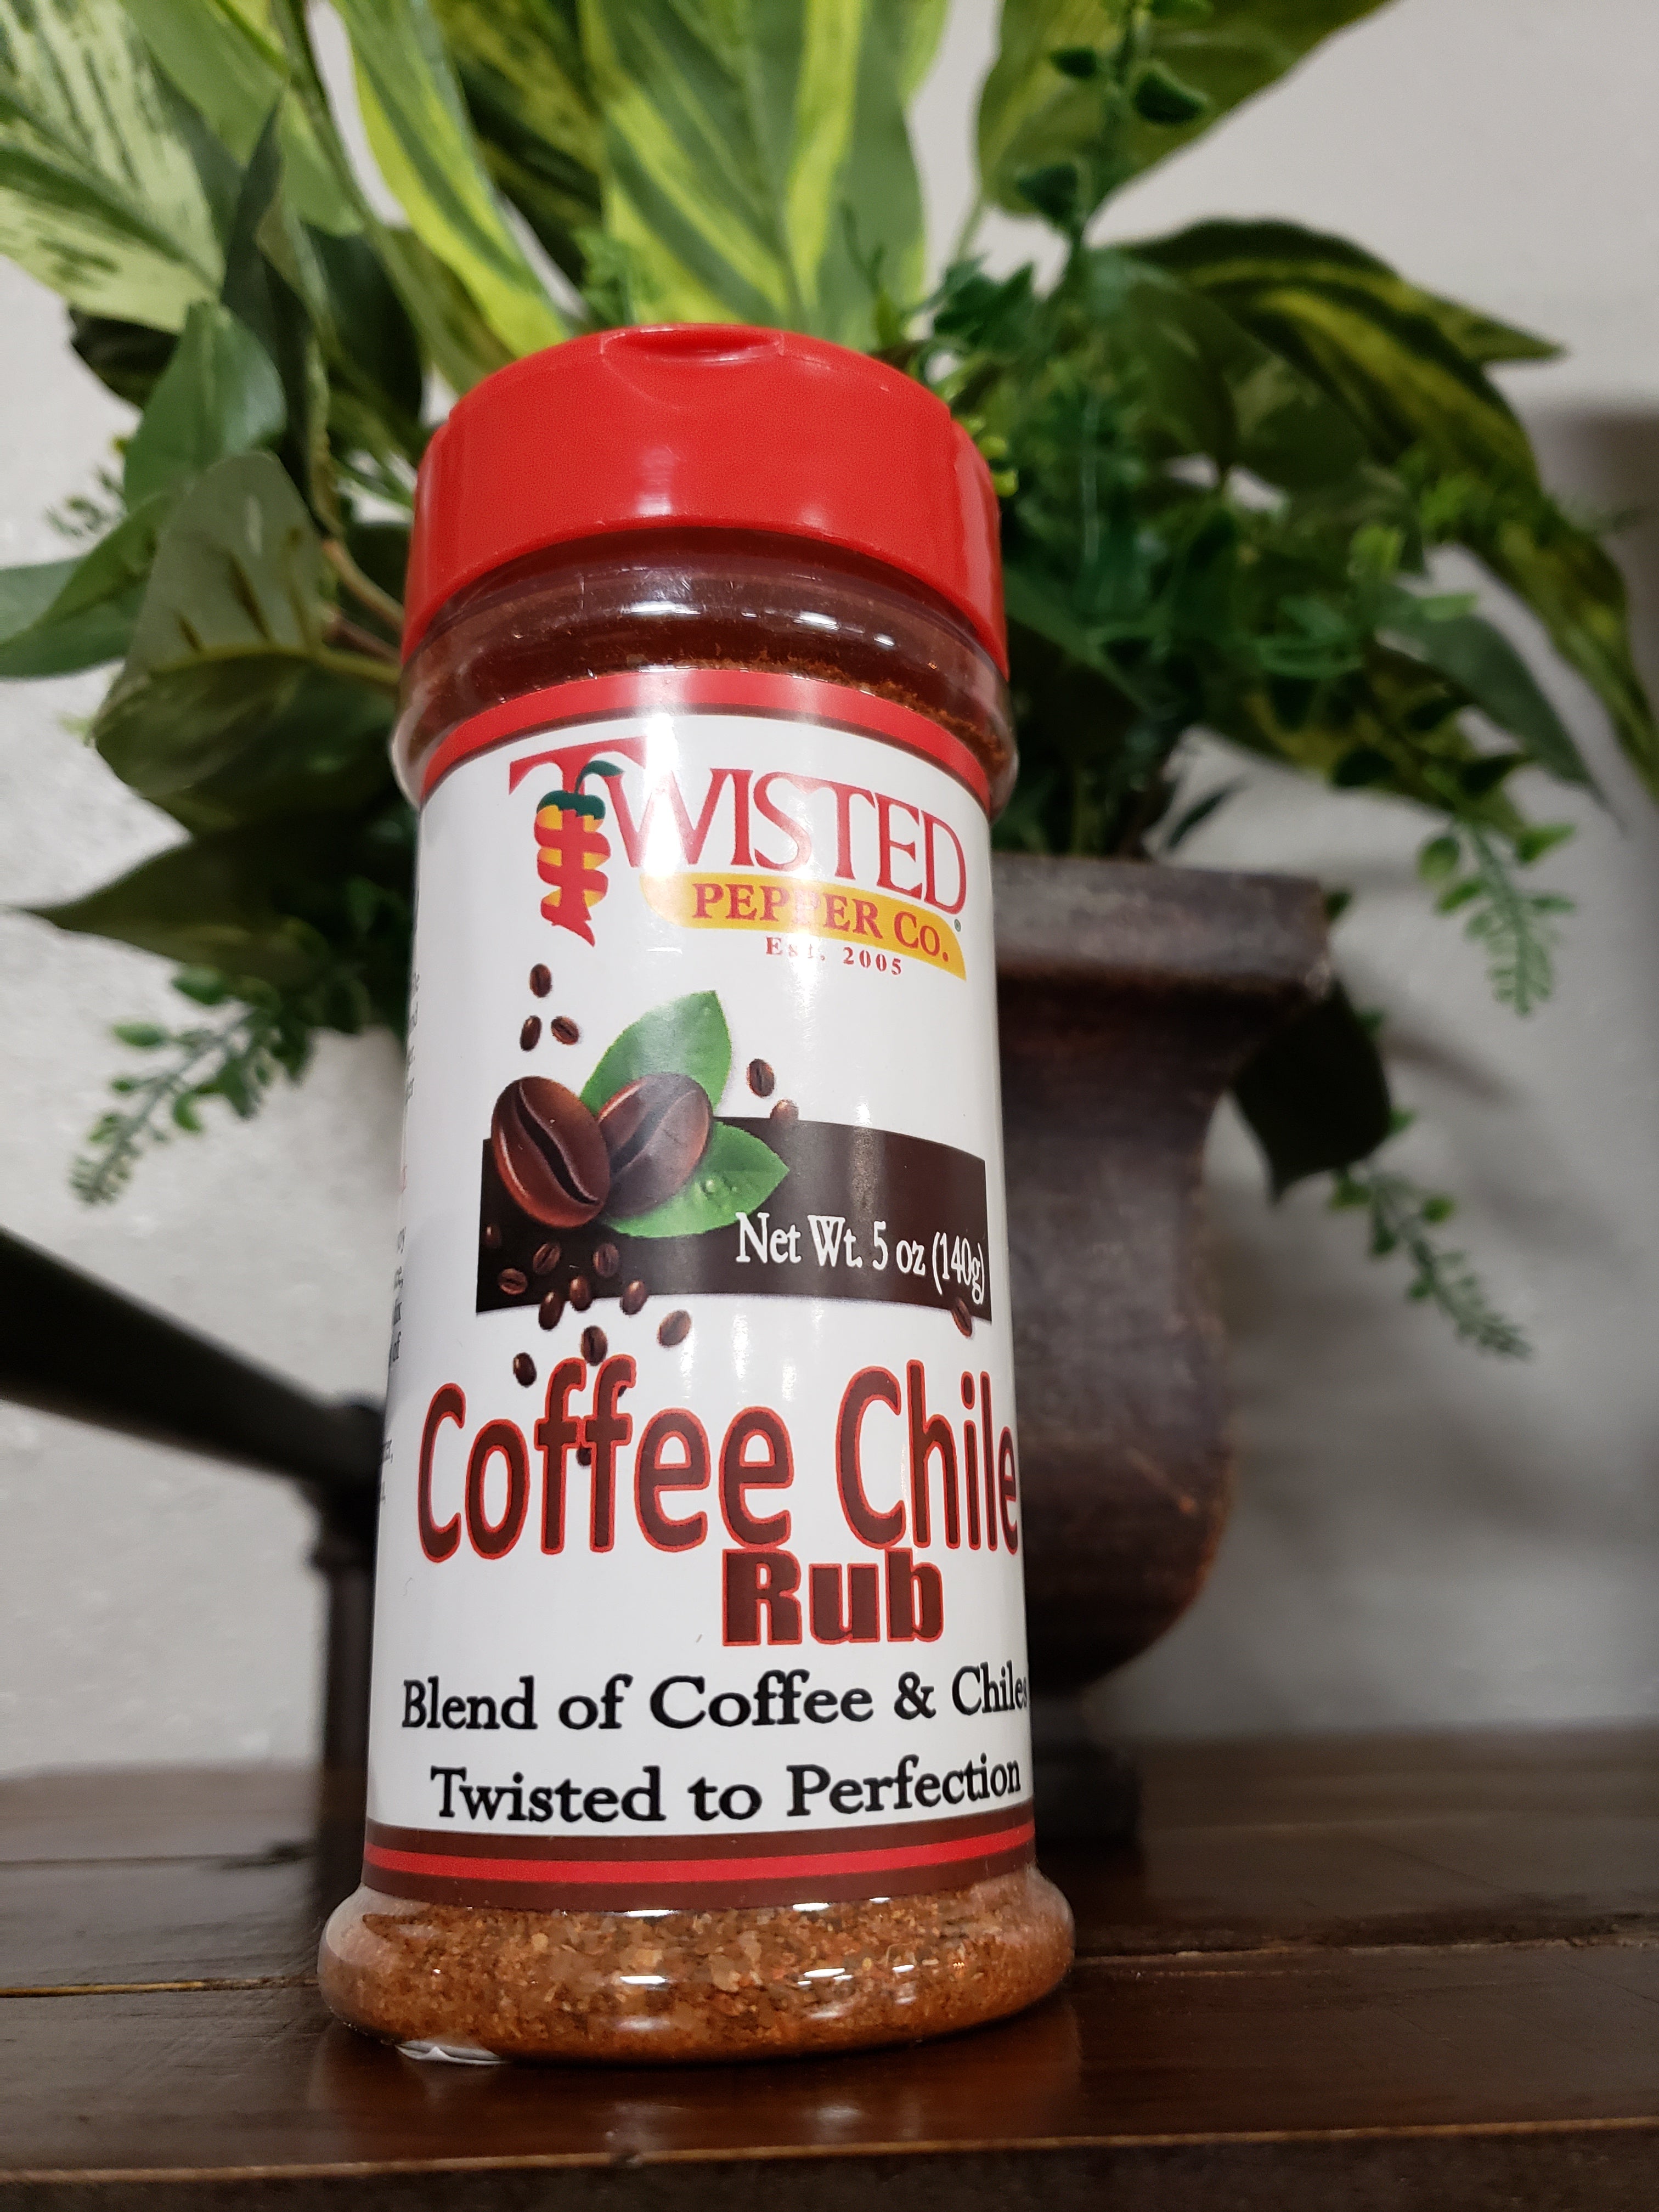 Coffee Chile rub